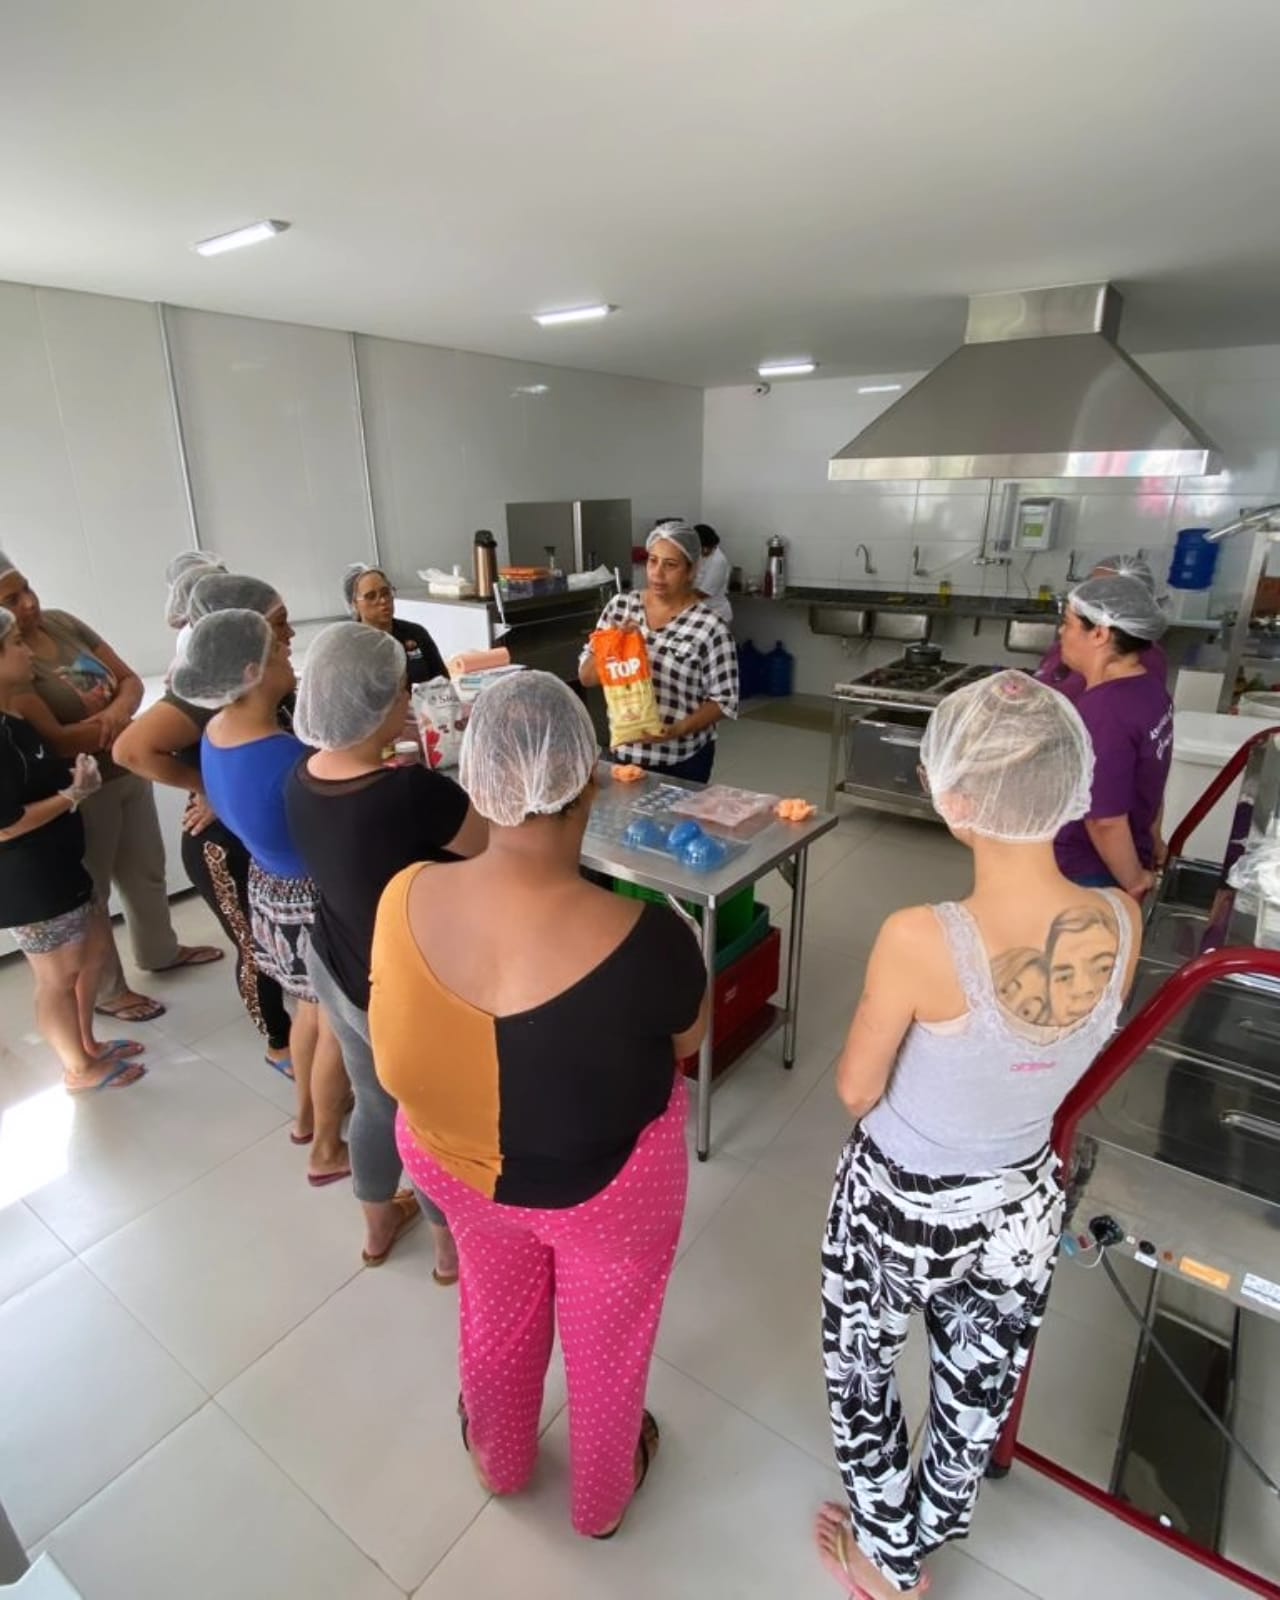 Na imagem, moradores da Vila Reencontro Santo Amaro estão reunidos em um círculo na cozinha, trabalhando na confecção de ovos de chocolate. Eles usam luvas e toucas de proteção. Uma mulher está na frente deles, repassando orientações.